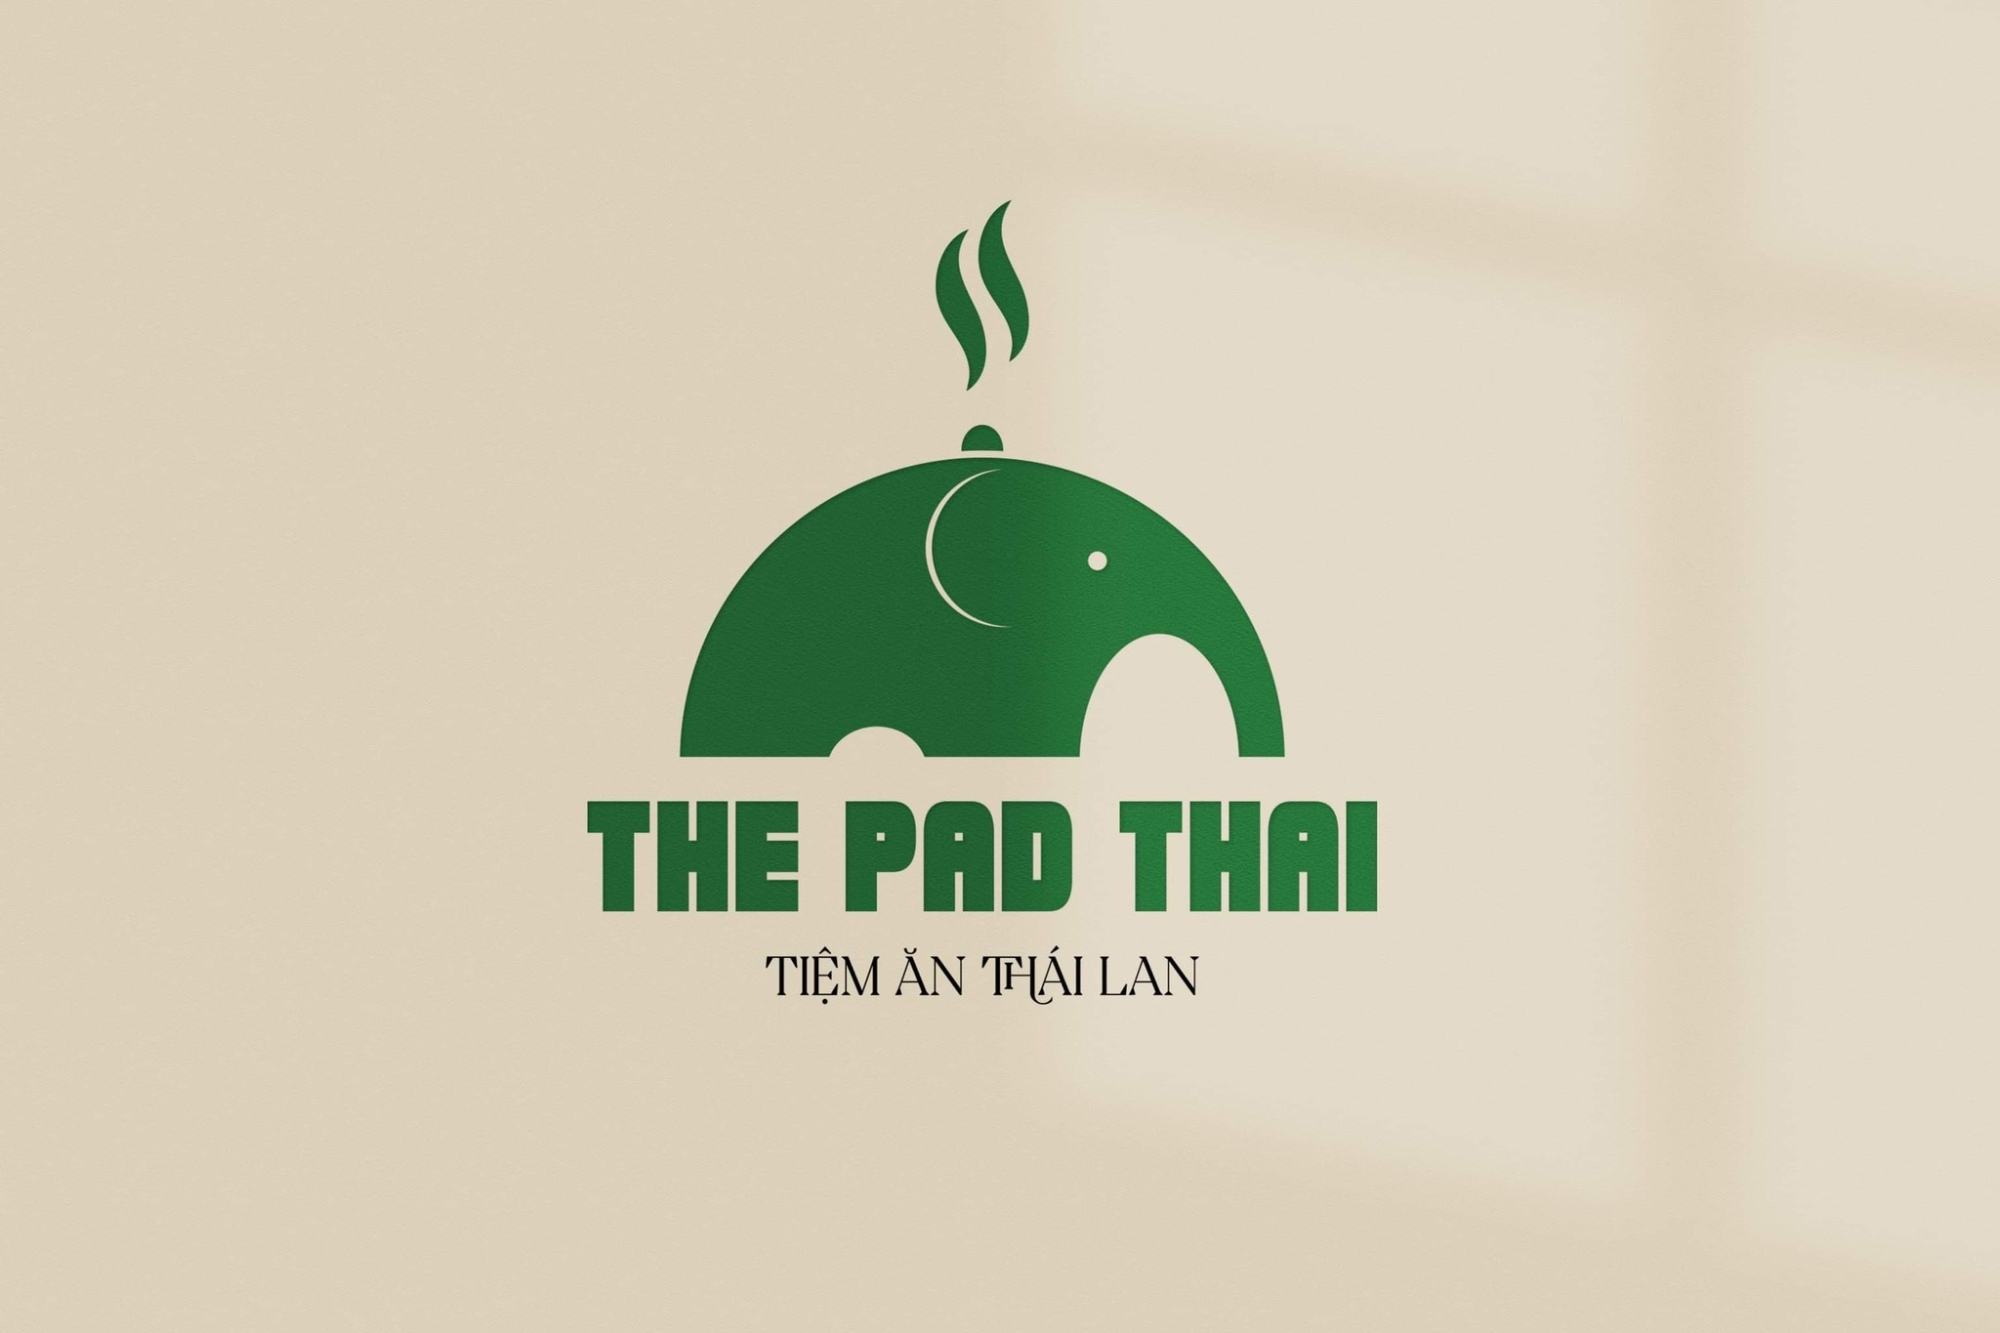 The Pad Thai - Tiệm Ăn Thái Lan